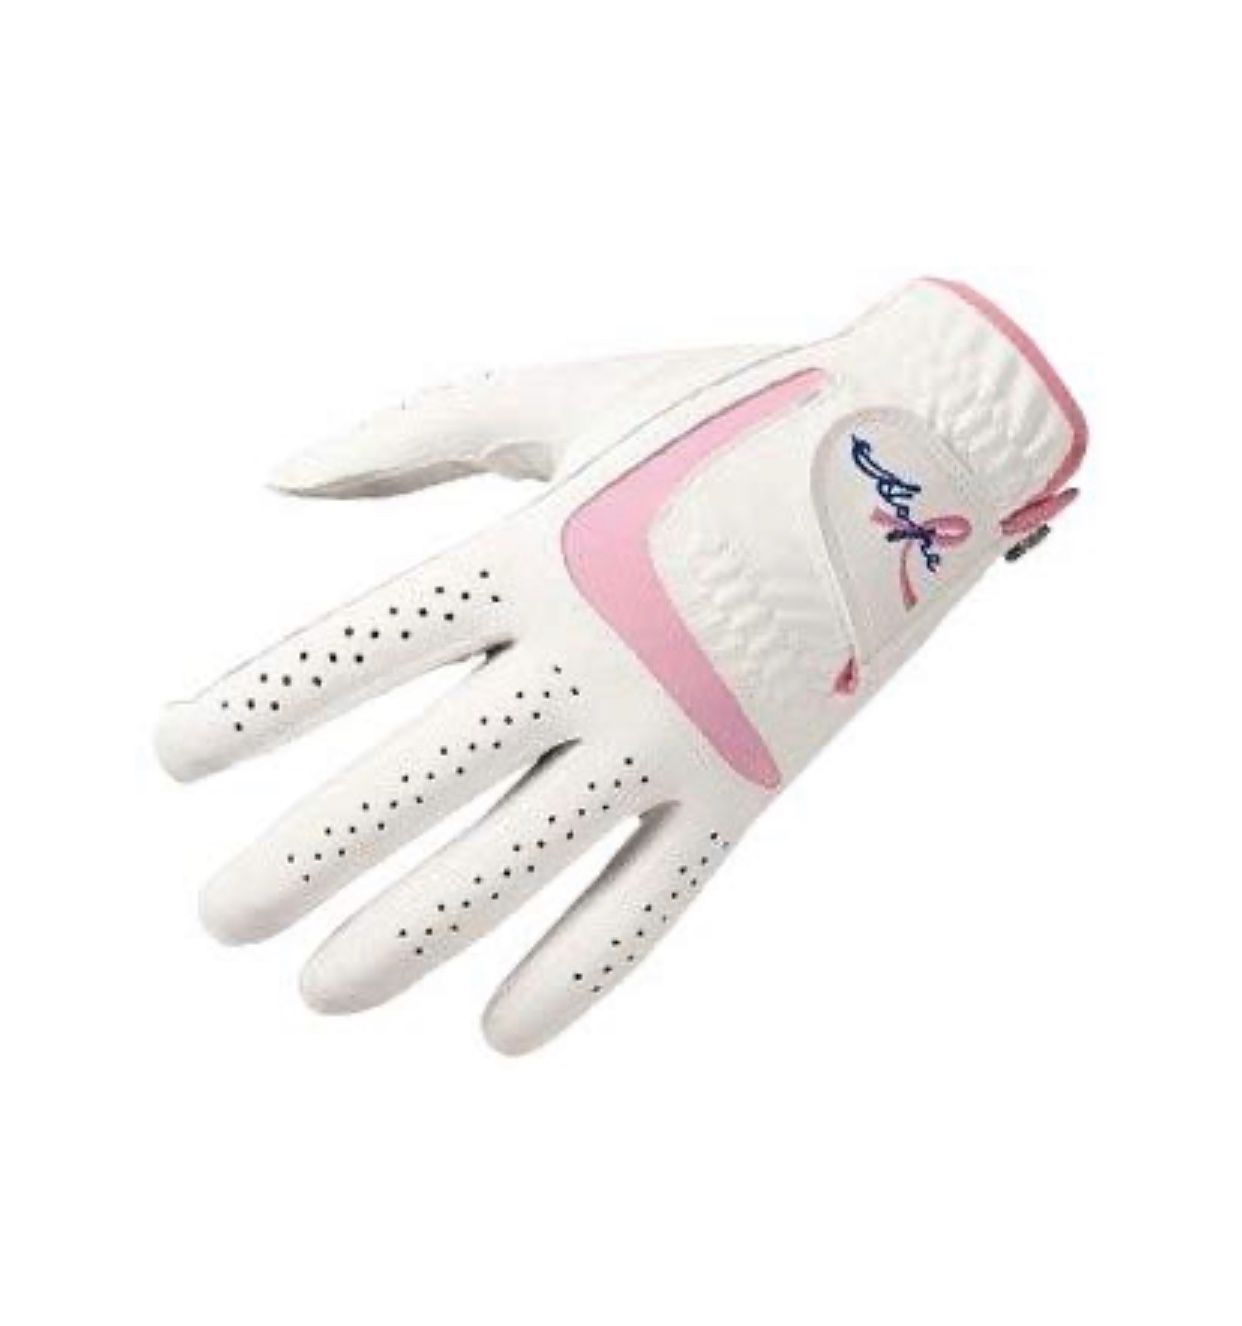 Wilson Hope Golf Glove (Women's, Left-Handed, Small)